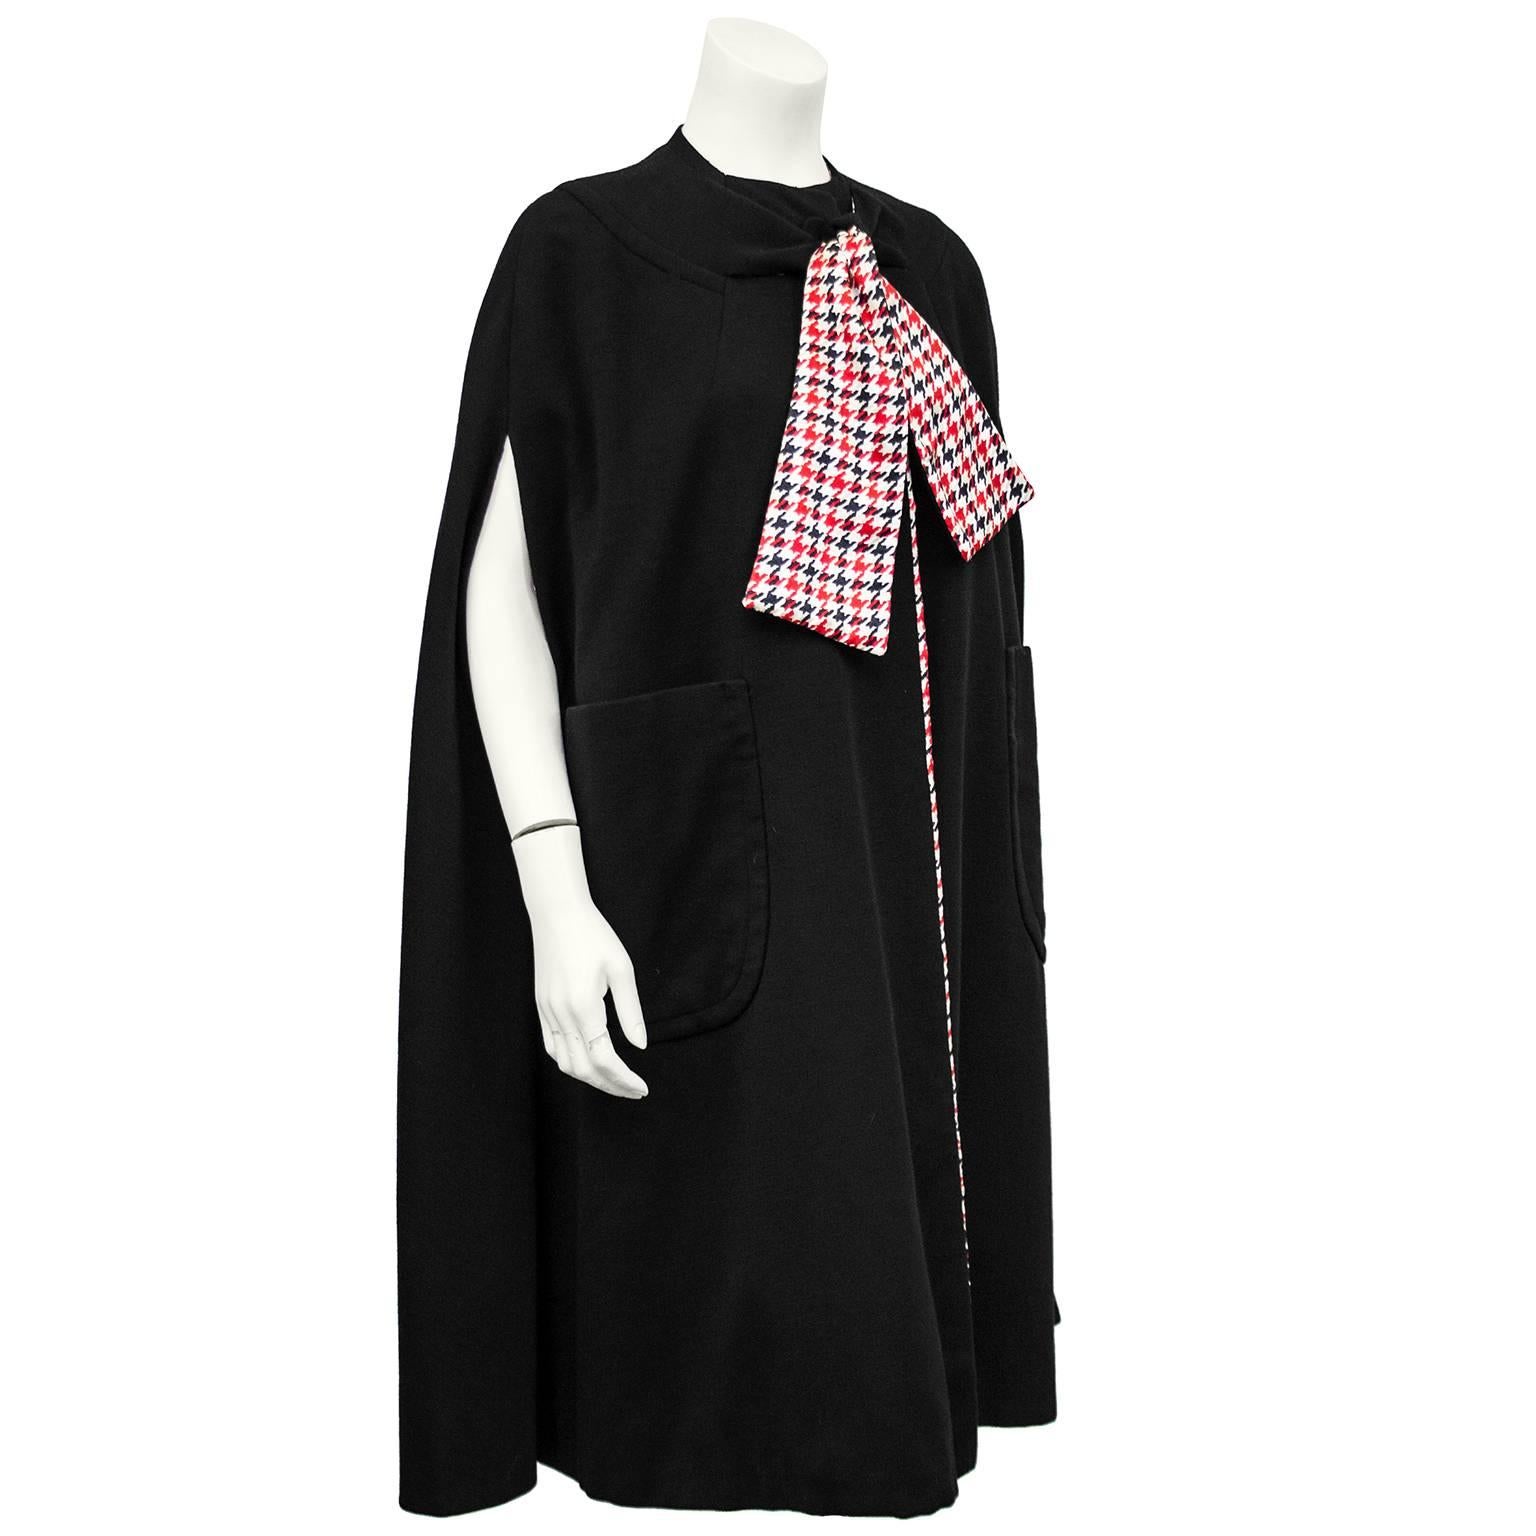 cape en jersey de laine noire Pauline Trigere des années 1960. Doublure en soie pied-de-poule rouge, noire et crème pour une touche de couleur. Grand nœud papillon à l'encolure avec une doublure noire d'un côté et une doublure pied-de-poule de